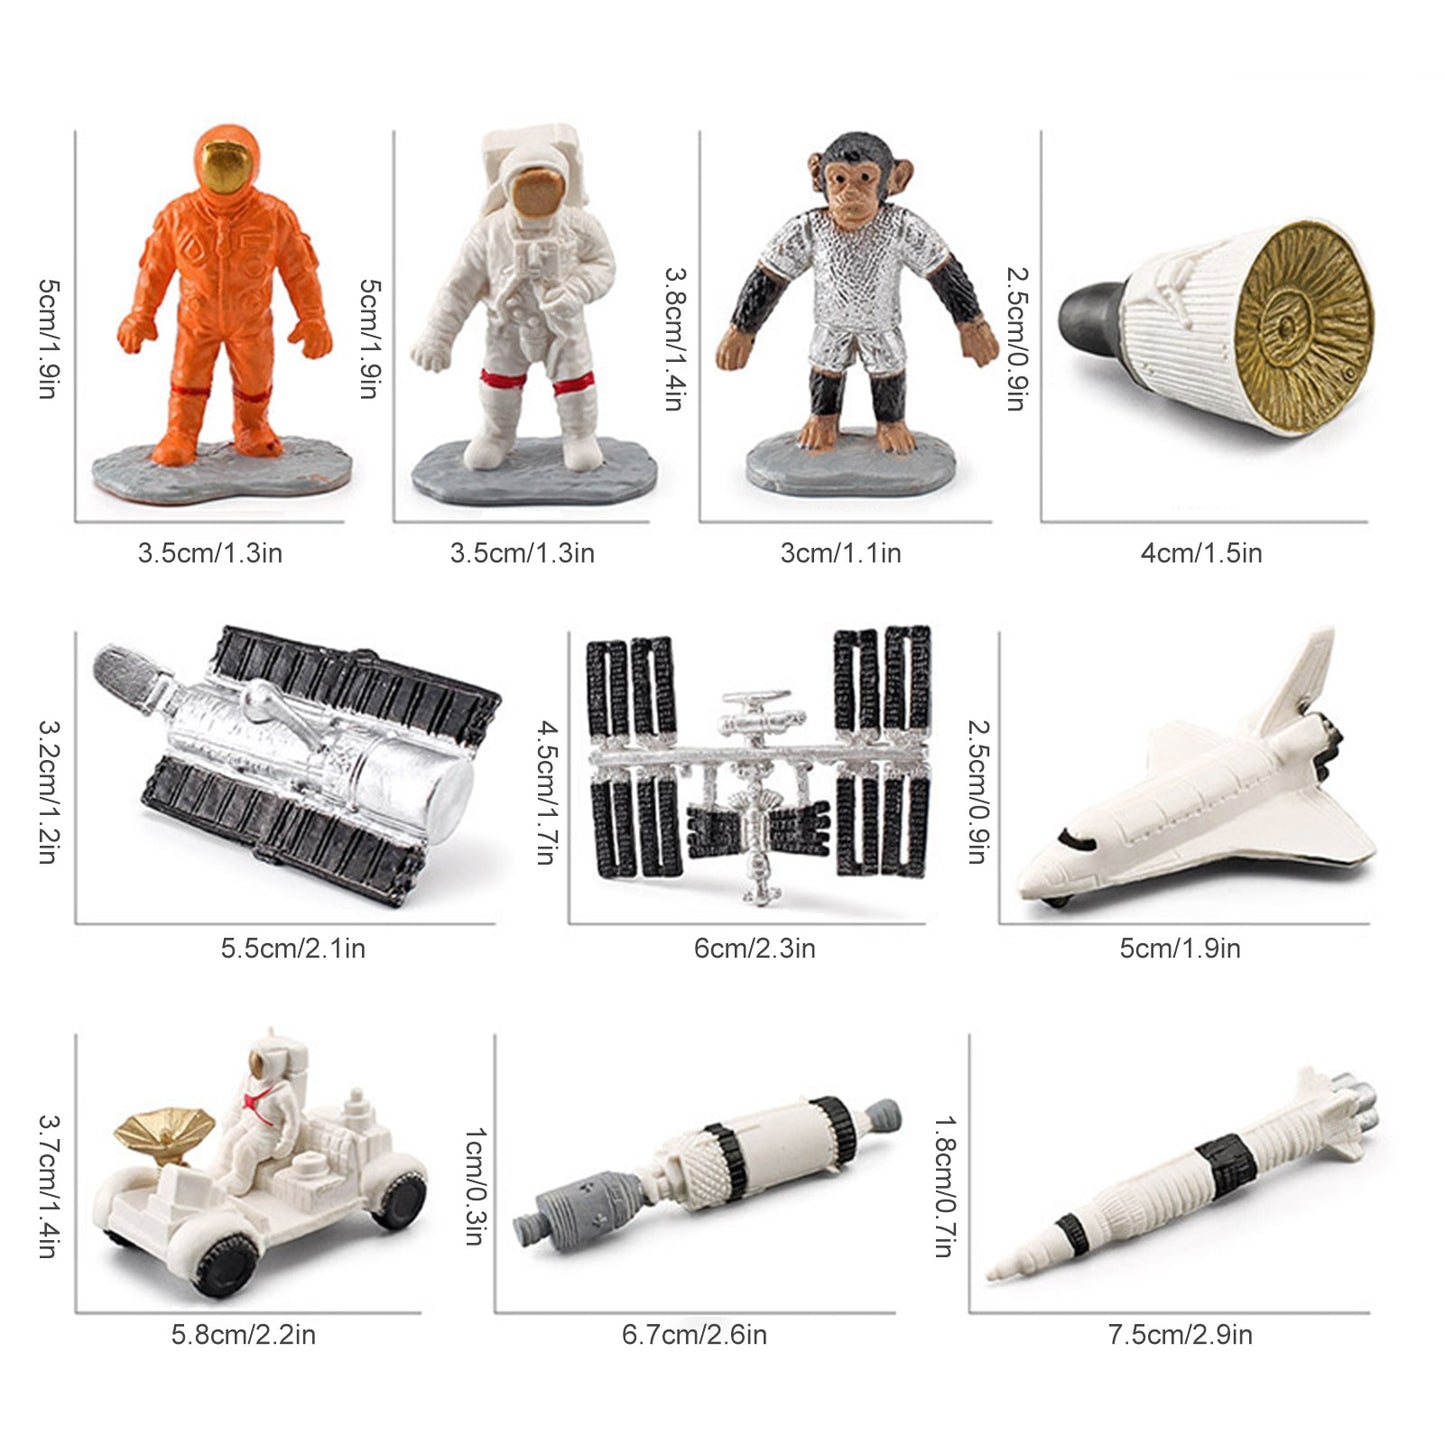 Miniature Astronaut Action Figures Model Set - Space Theme, 10pcs